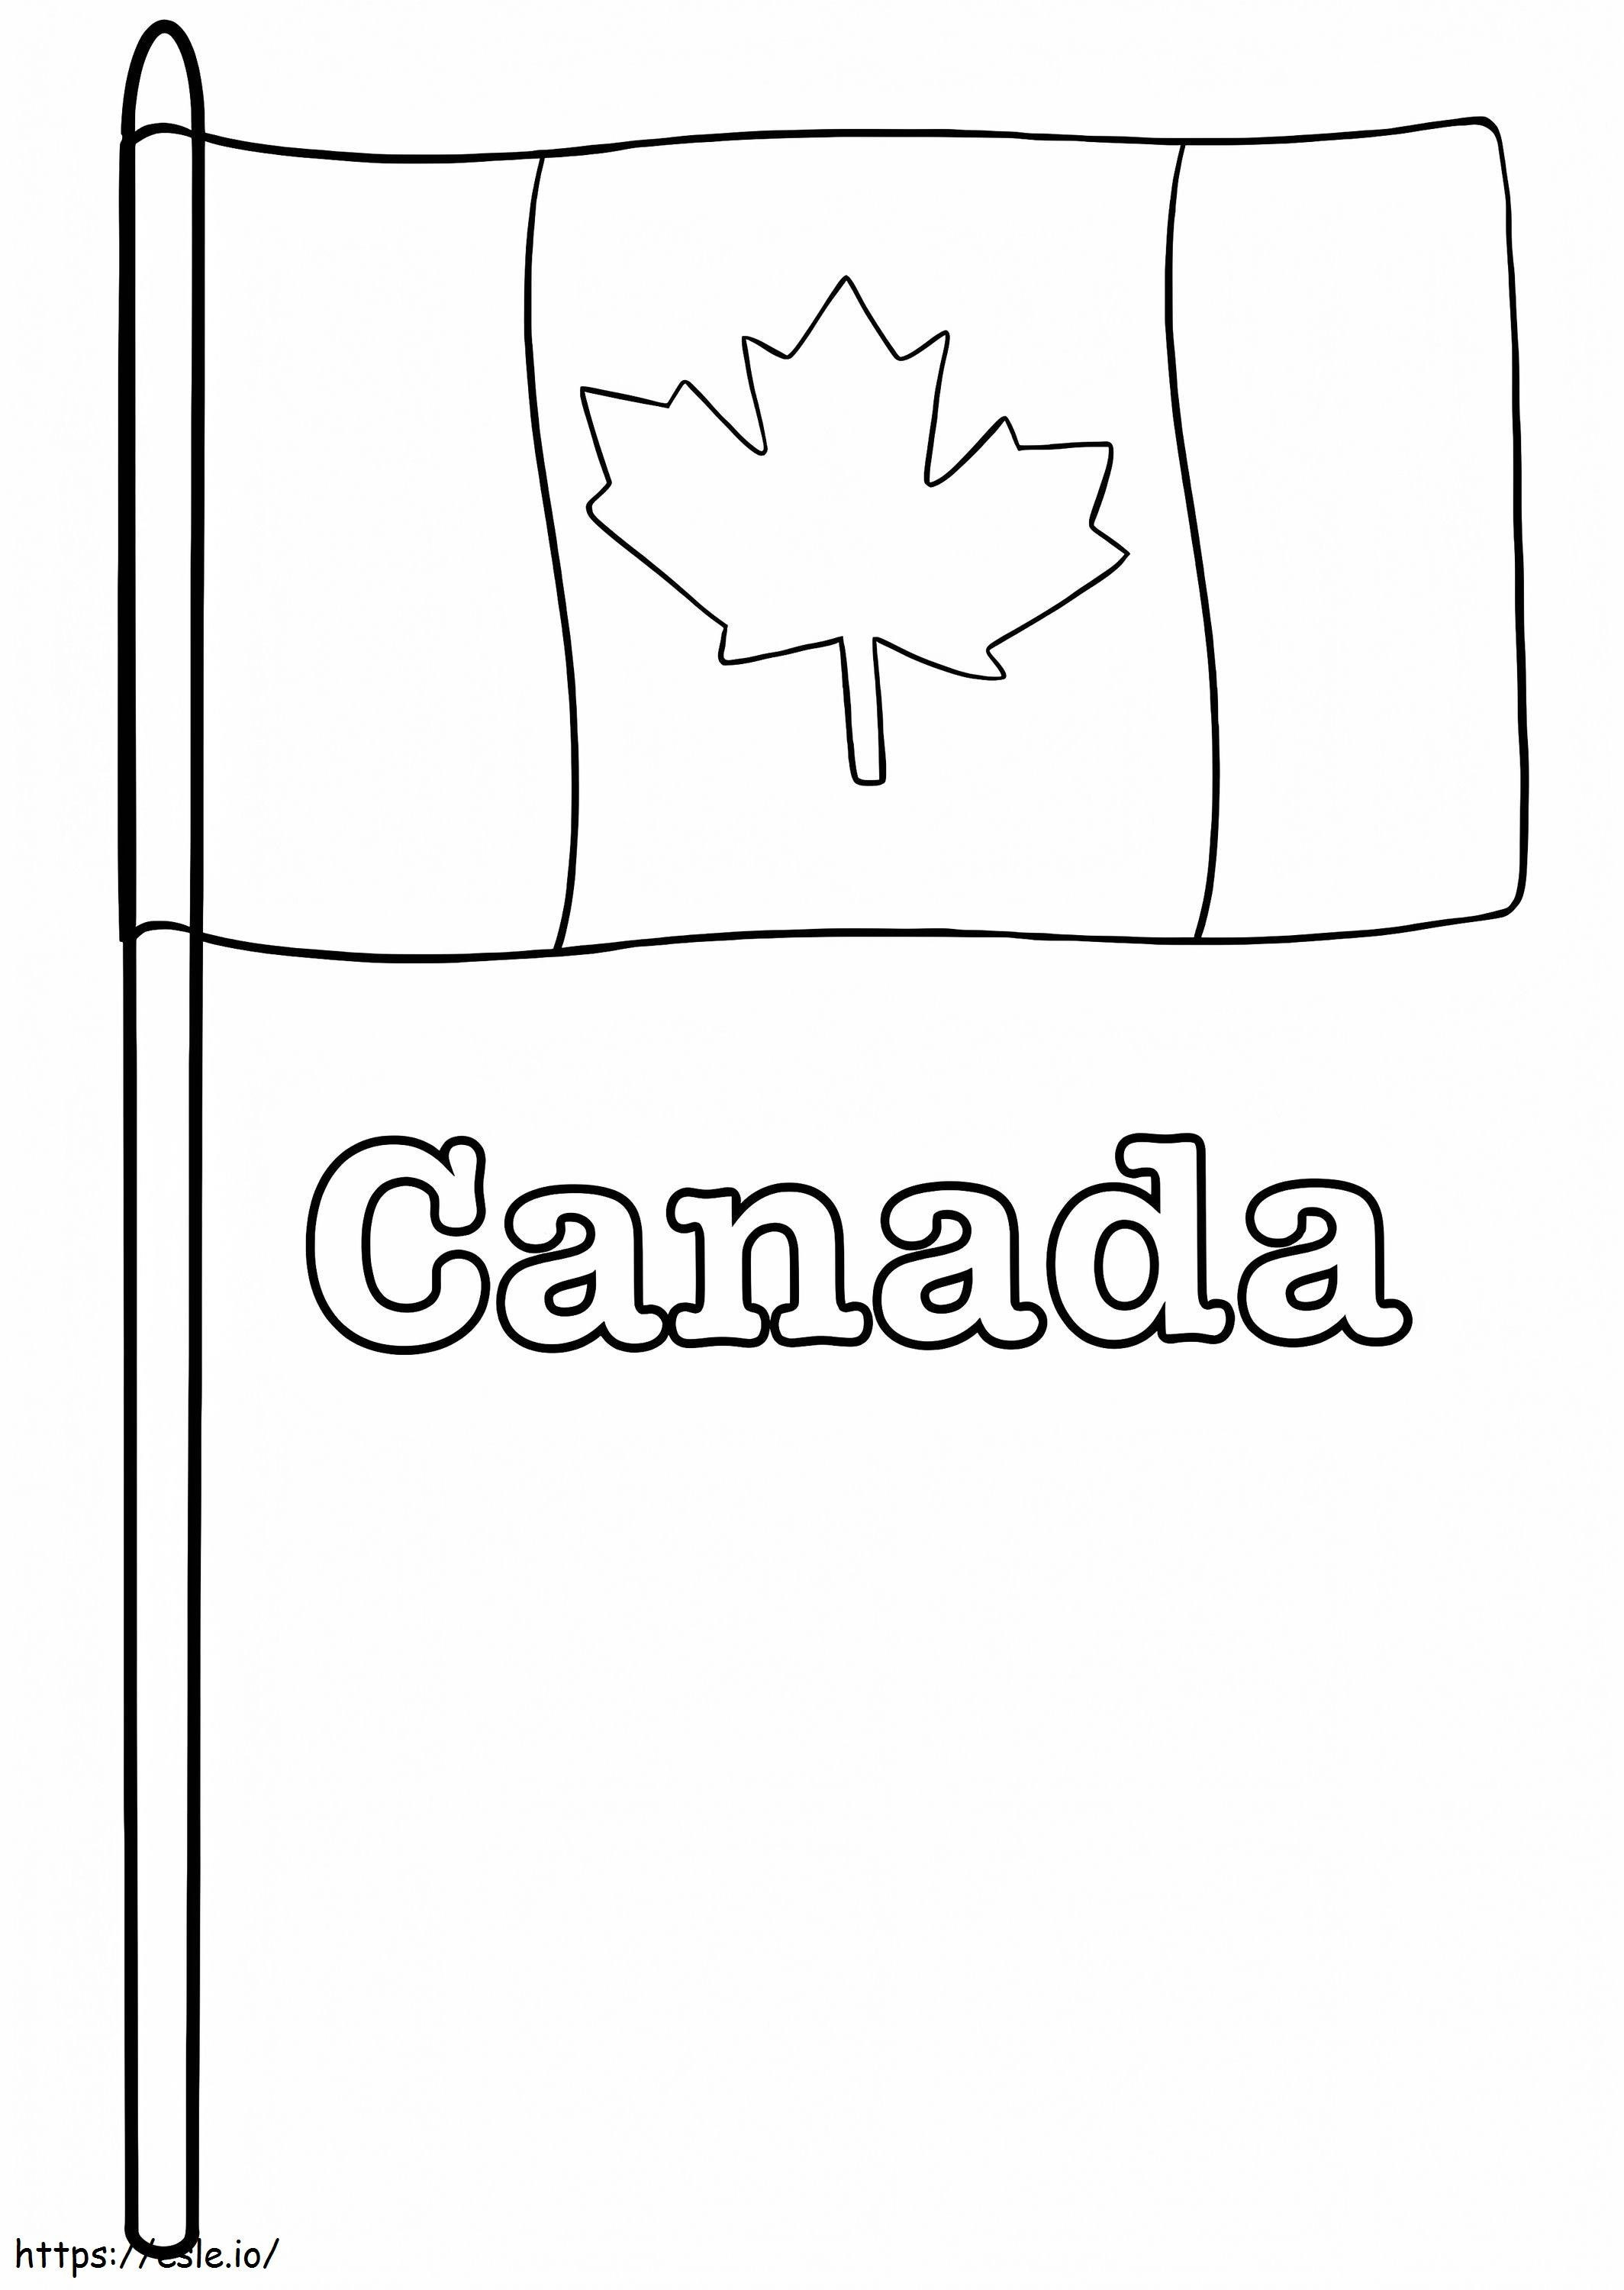 Steagul Canadei 1 de colorat